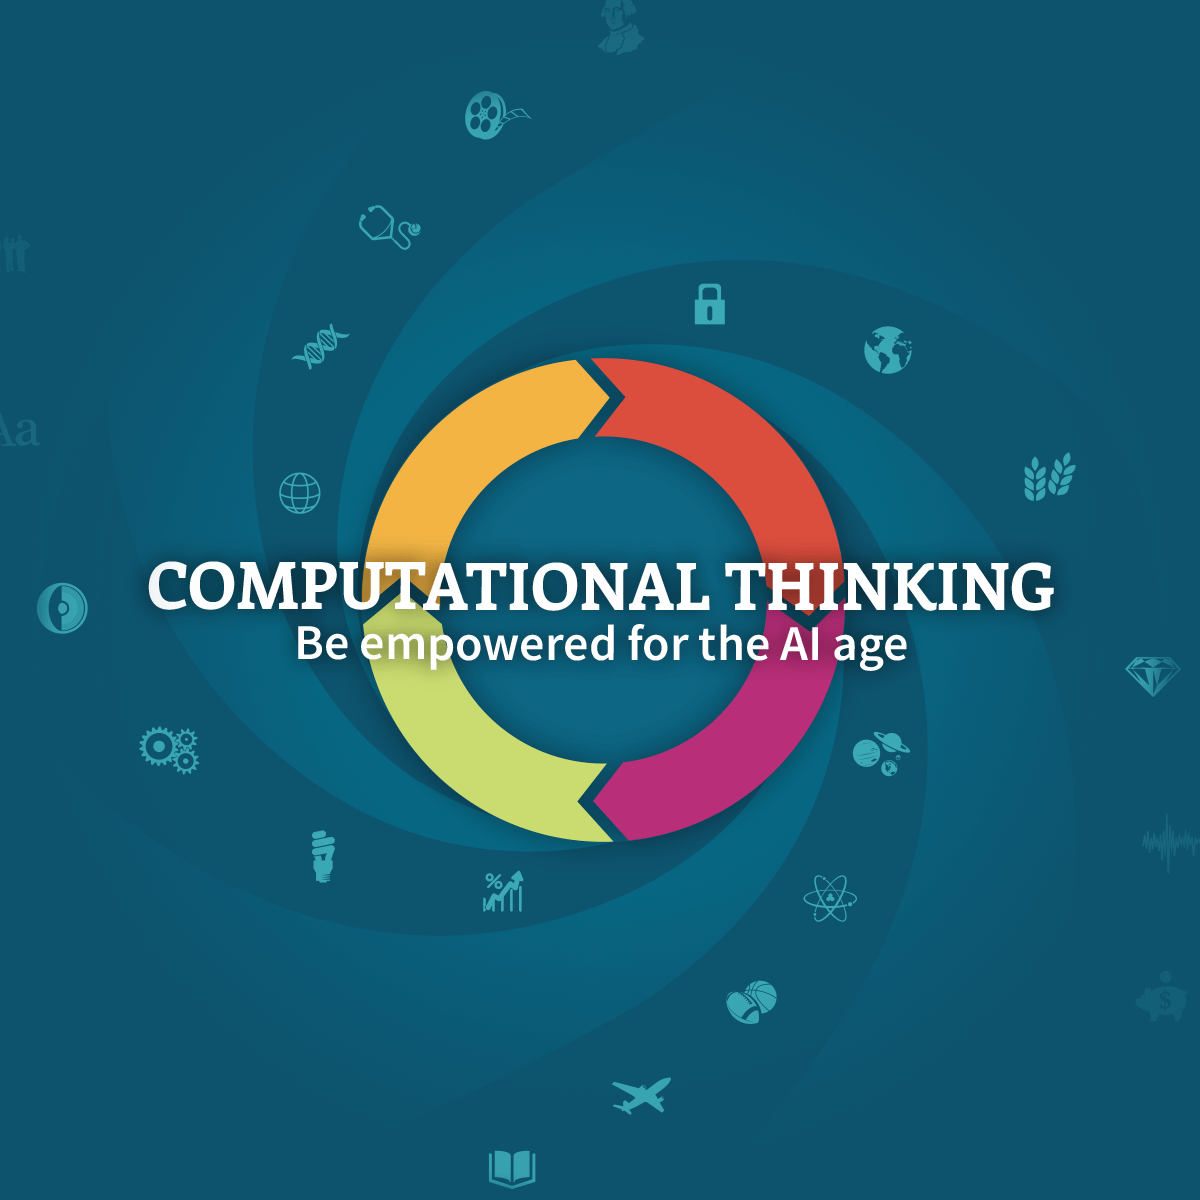 (c) Computationalthinking.org